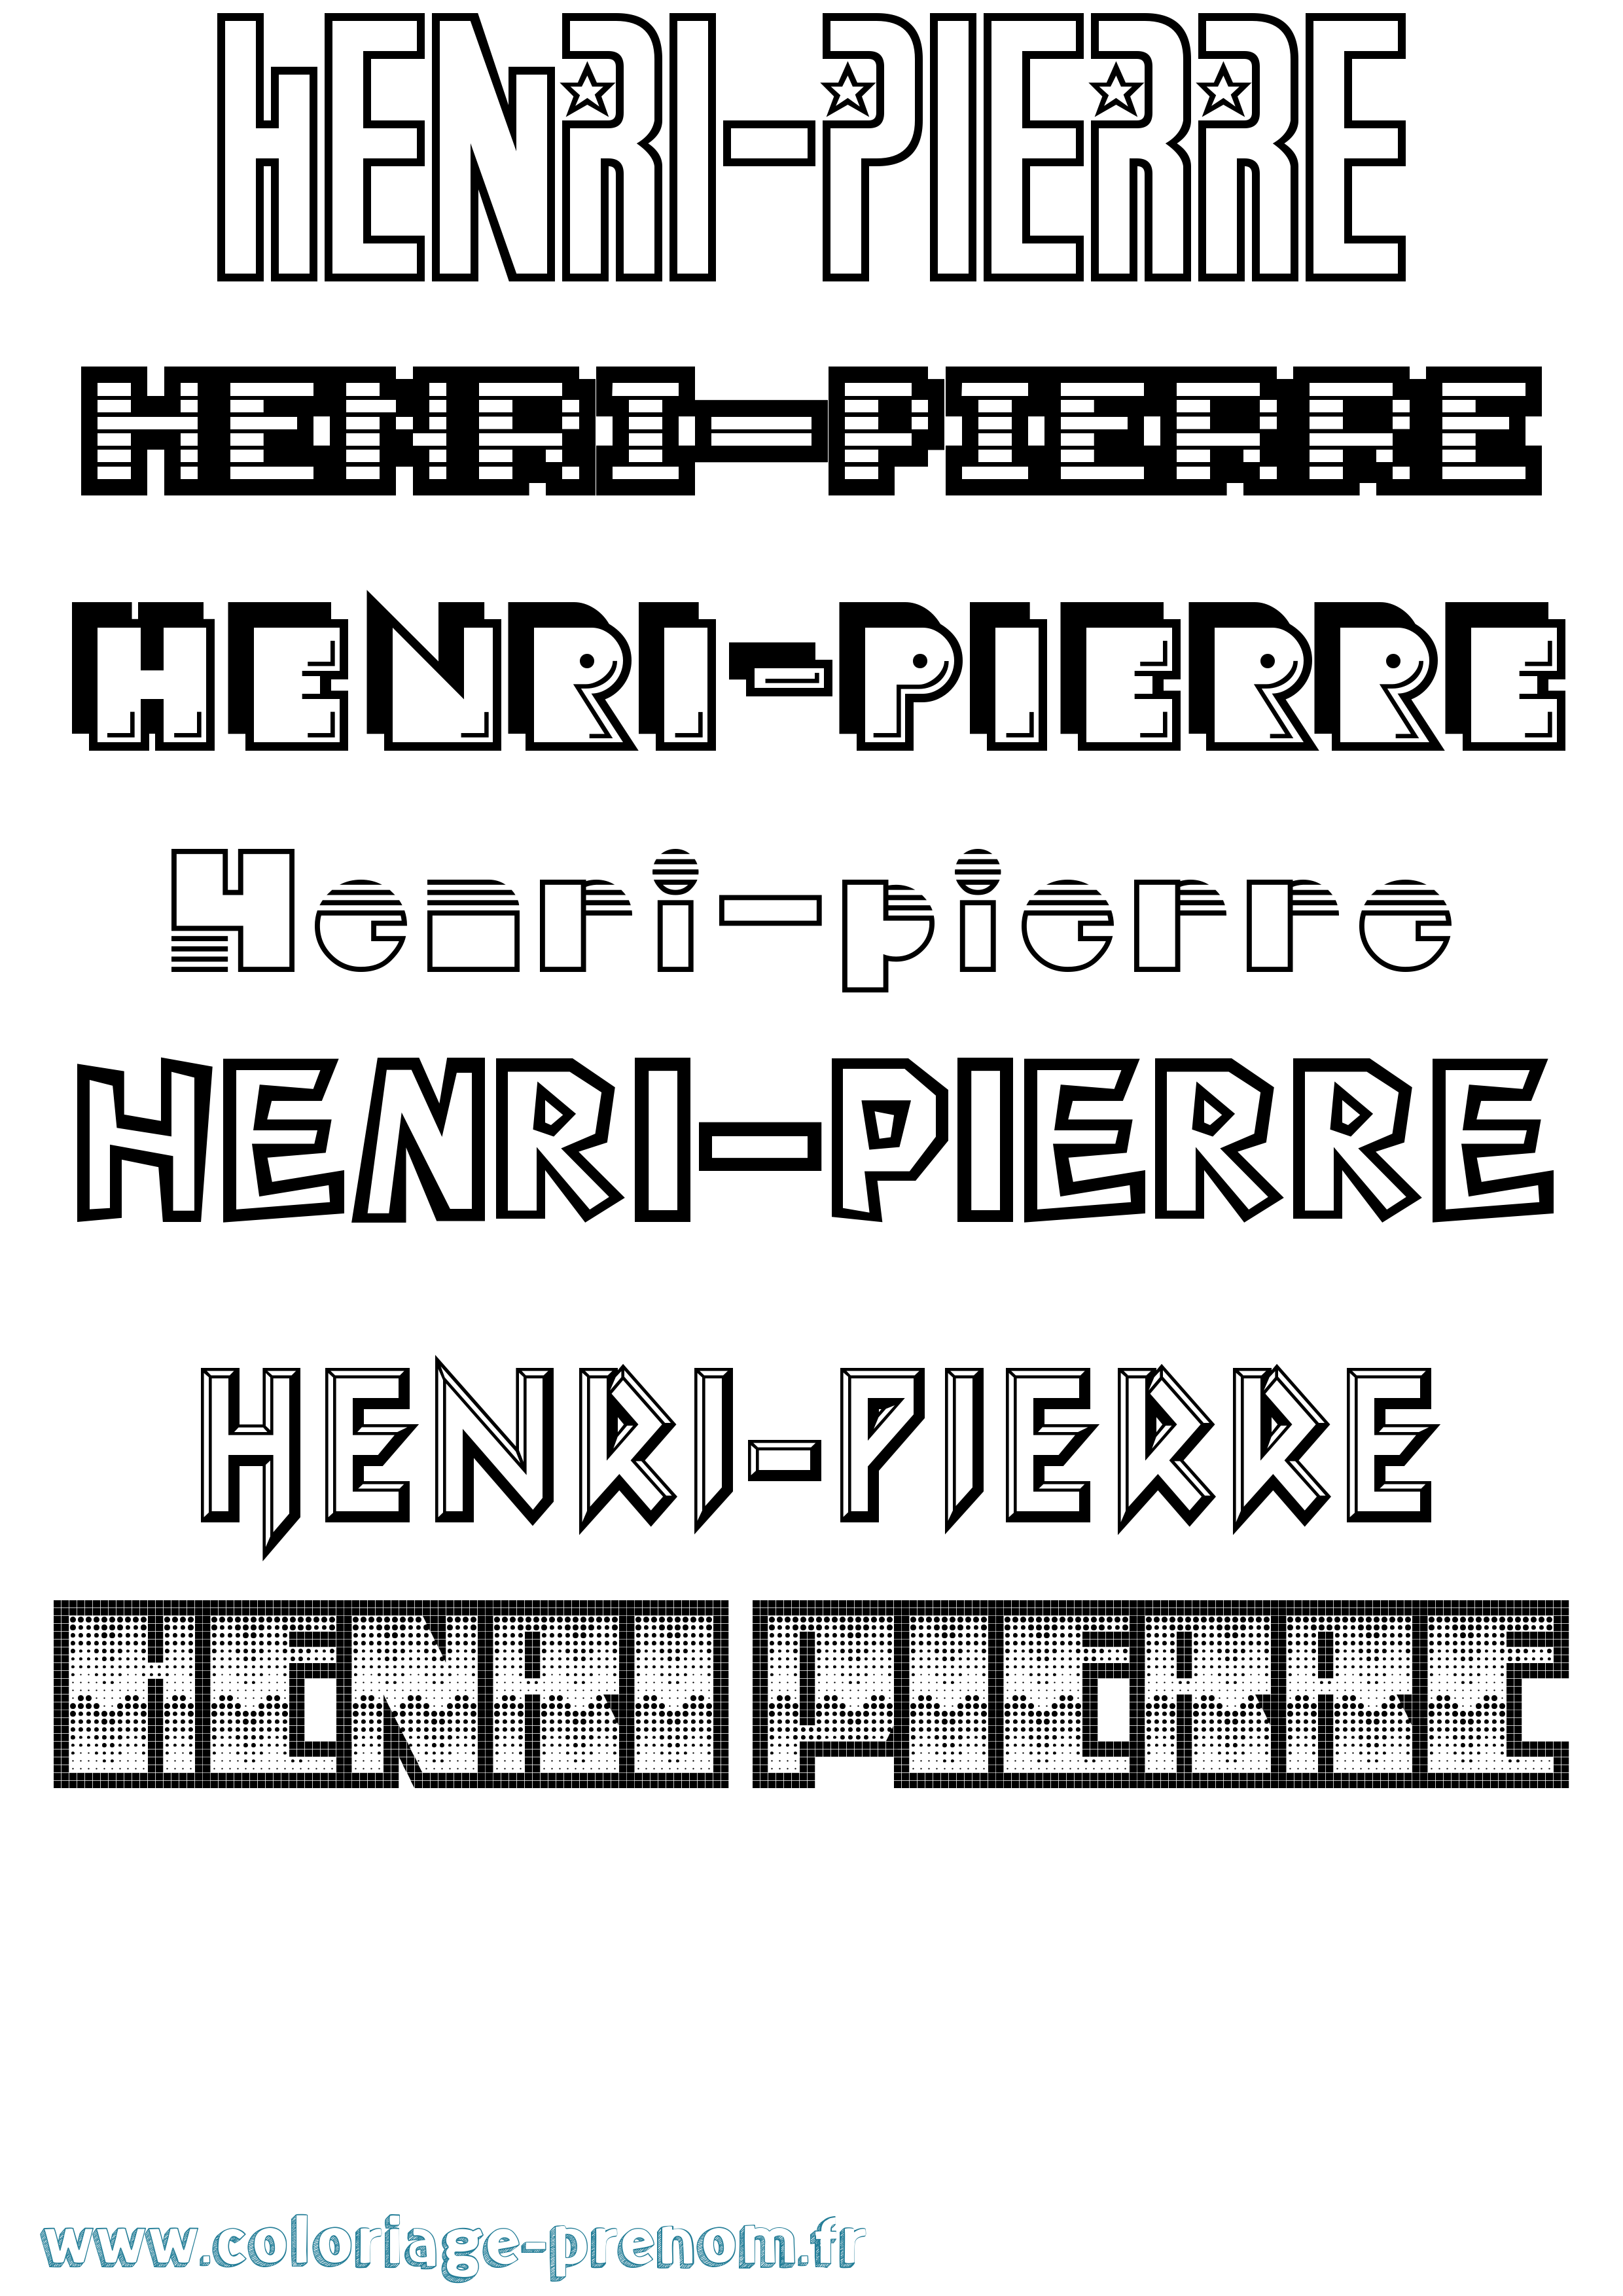 Coloriage prénom Henri-Pierre Jeux Vidéos